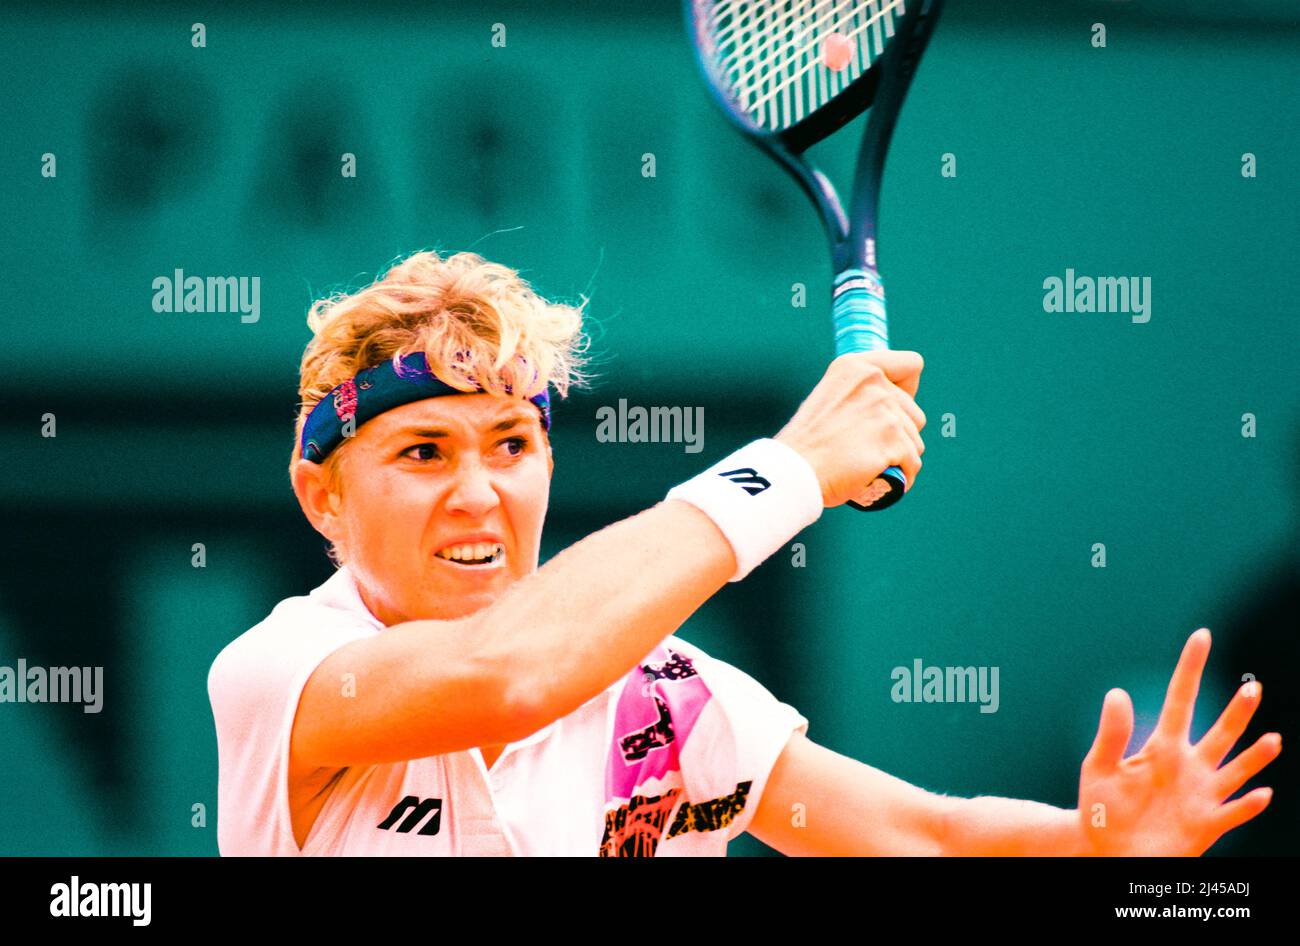 Le joueur de tennis professionnel néerlandais Kristie Boogert, ici en mai 1993, lors de l'Open de France, officiellement connu sous le nom de Roland-Garros Banque D'Images